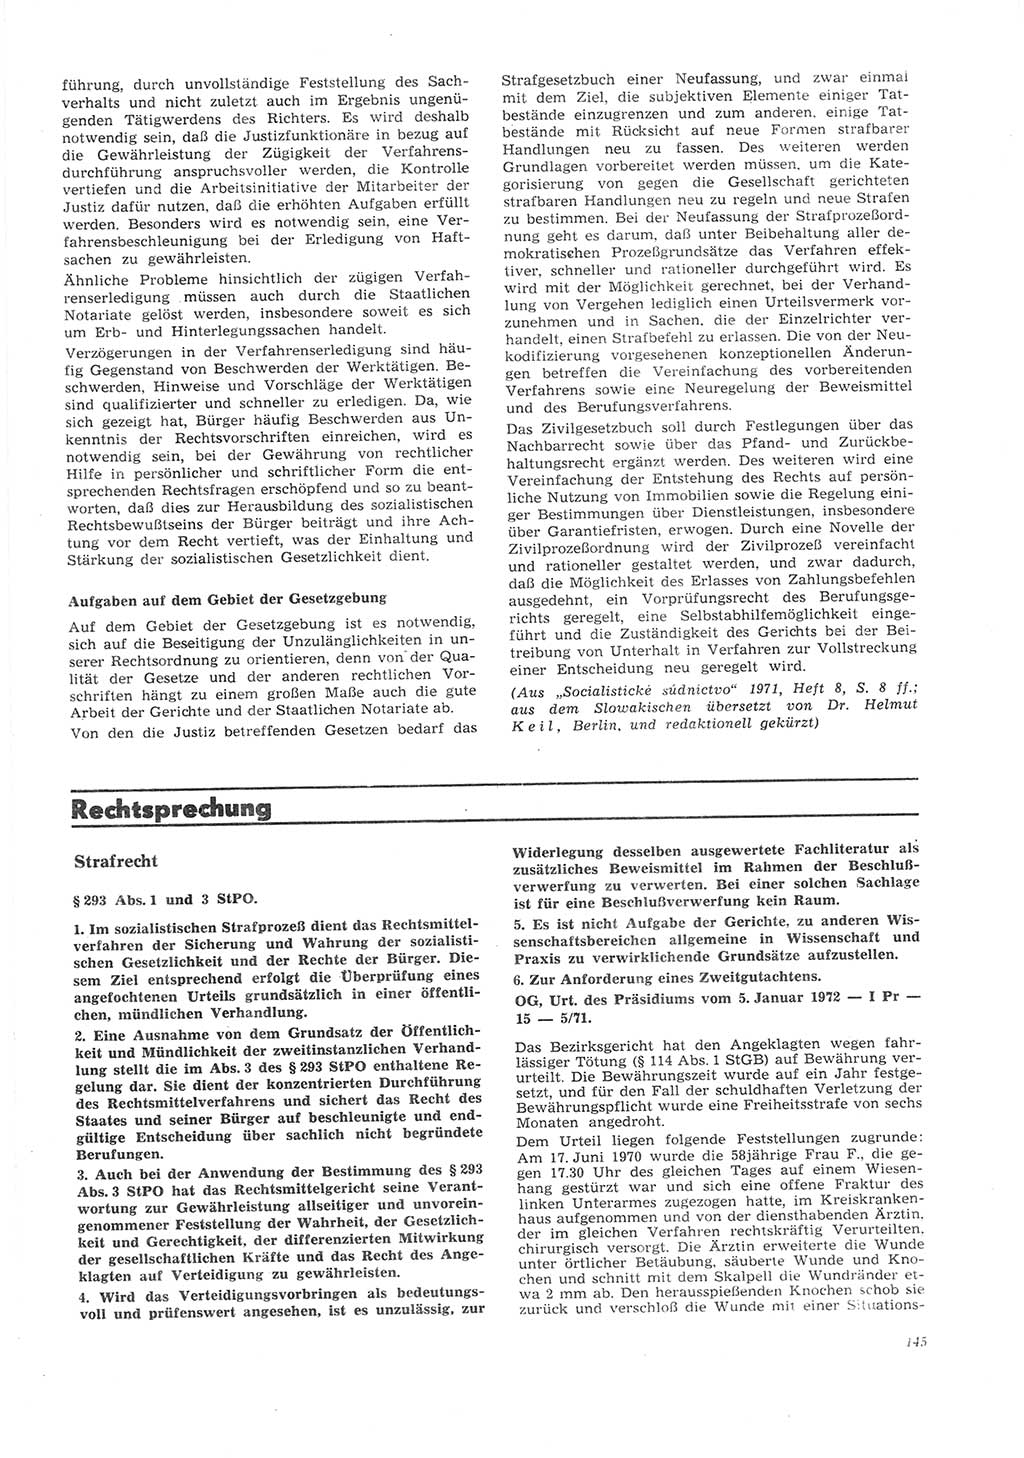 Neue Justiz (NJ), Zeitschrift für Recht und Rechtswissenschaft [Deutsche Demokratische Republik (DDR)], 26. Jahrgang 1972, Seite 145 (NJ DDR 1972, S. 145)